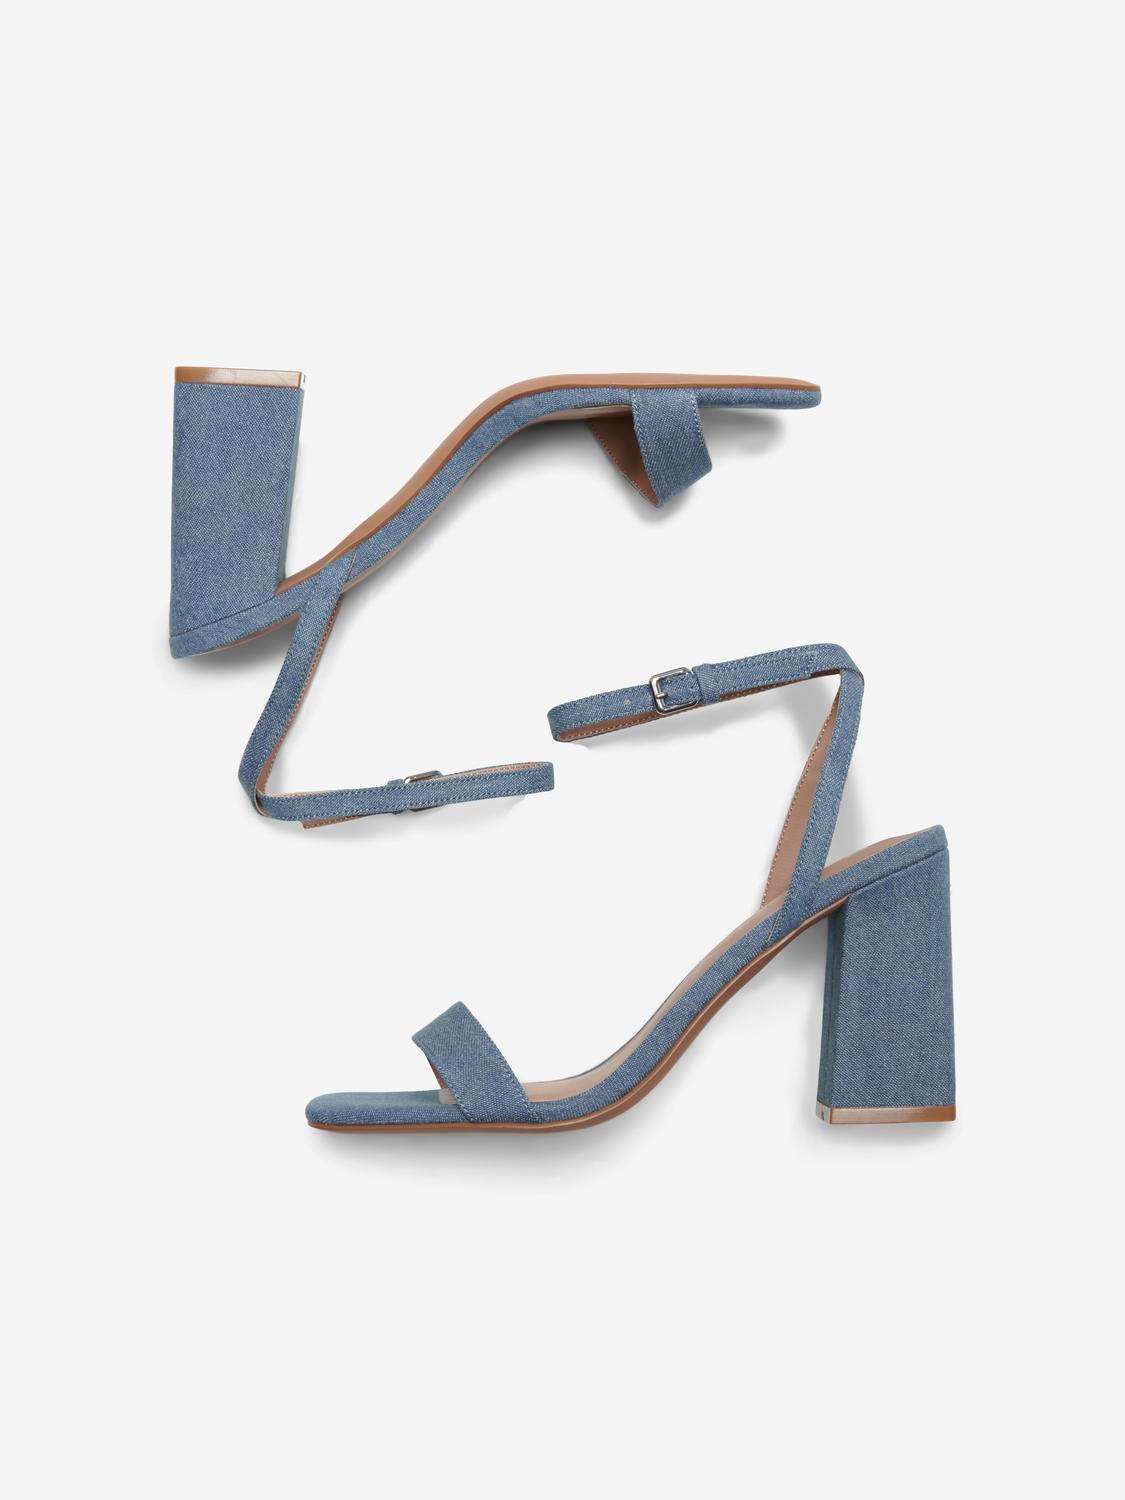 ONLY offene Spitze Verstellbarer Träger Schuhe mit Absatz -Light Blue Denim - 15298450